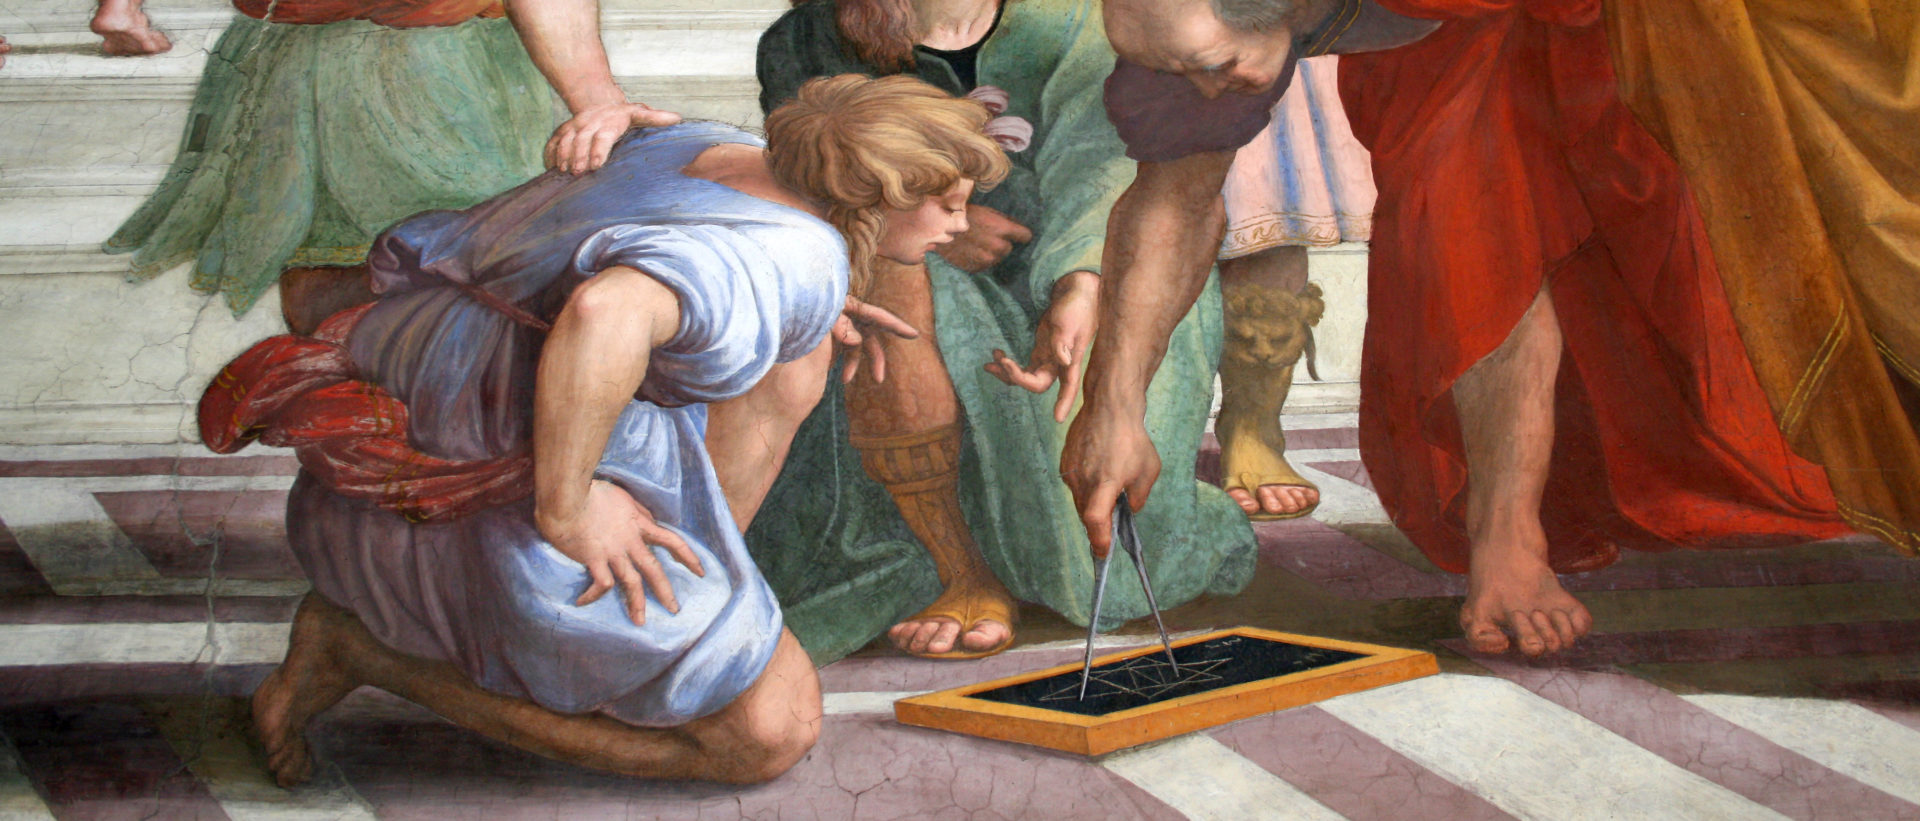 Les Musées du Vatican contribuent pour beaucoup aux finances du petit Etat (vue partielle du tableau de Raphaël "L'Ecole d'Athènes", avec Pythagore et ses élèves) | © Musées du Vatican